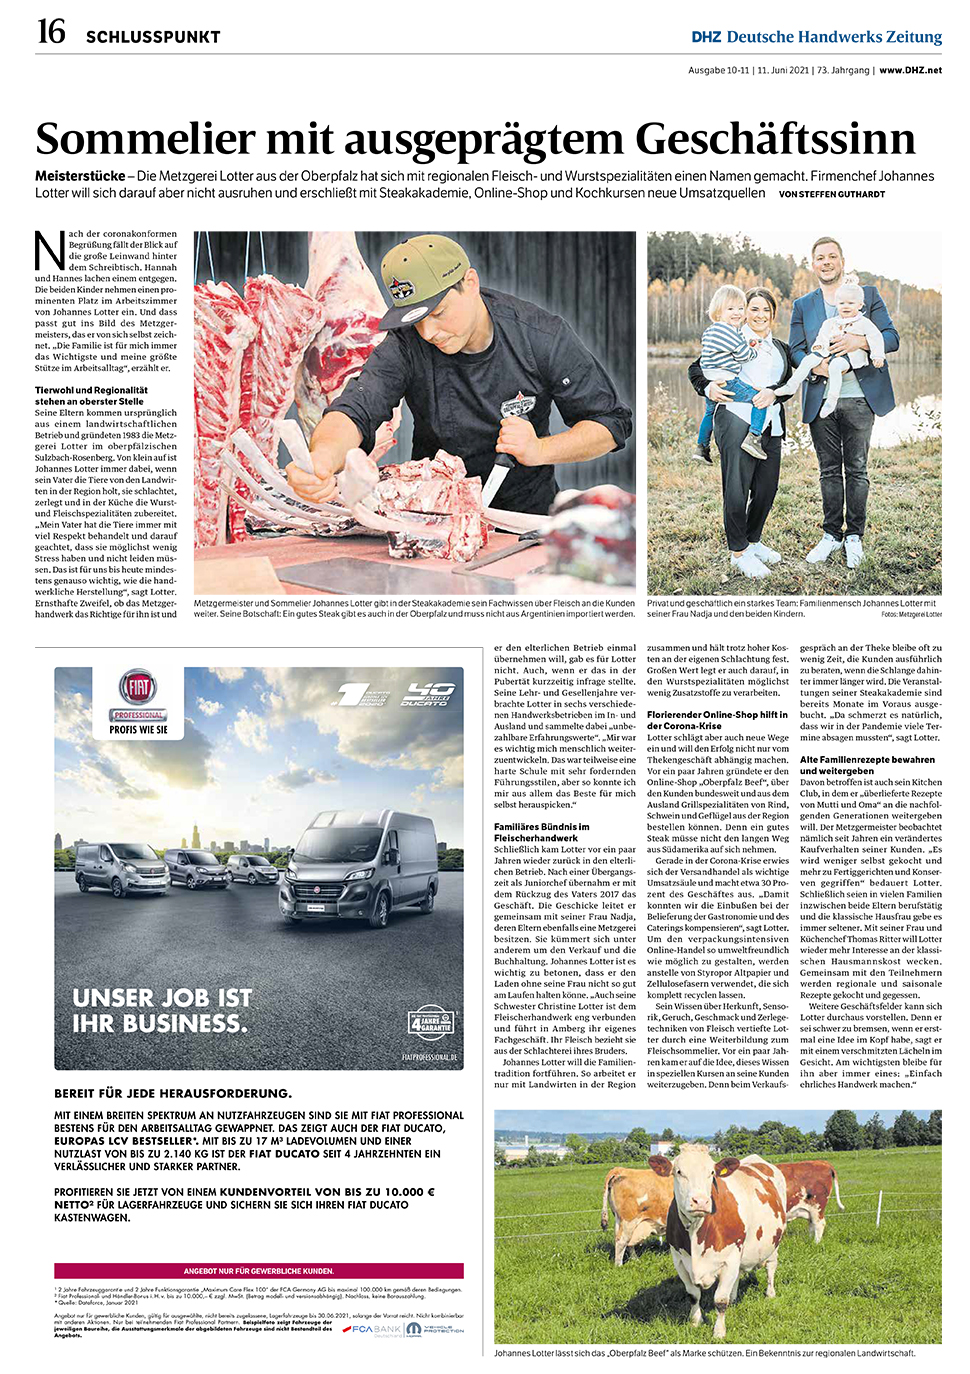 Oberpfalz-Beef.de in der Deutschen Handwerkszeitung